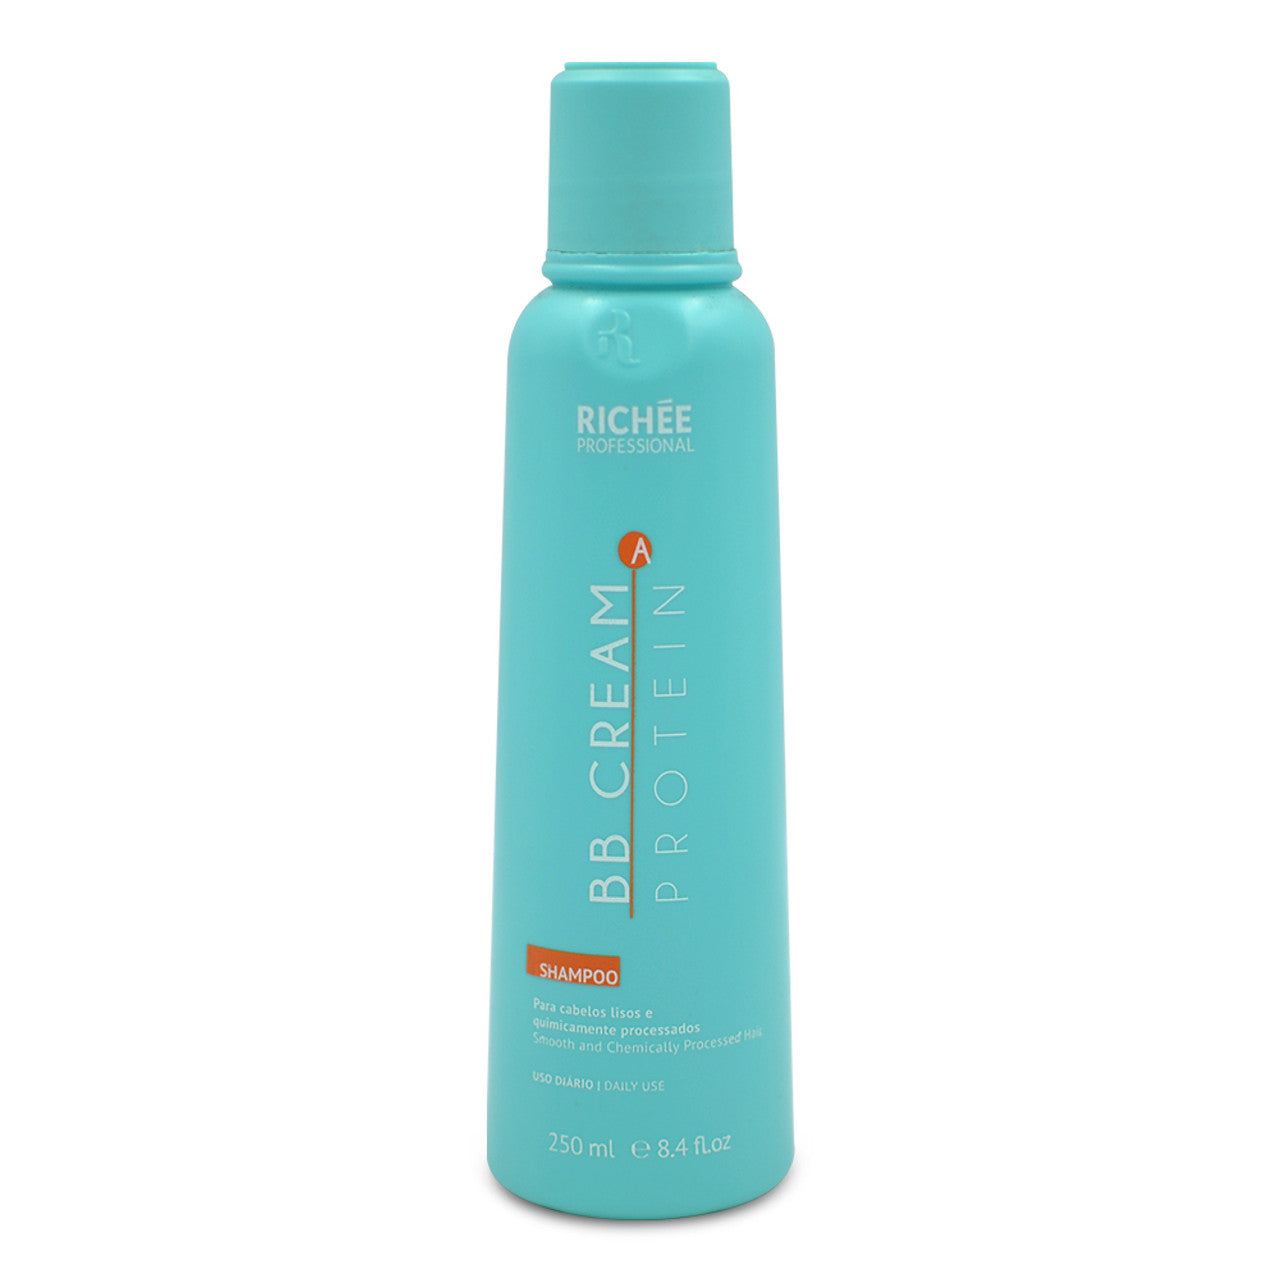 Richee, BB Cream A, Deep Cleansing Shampoo For Hair, 250ml